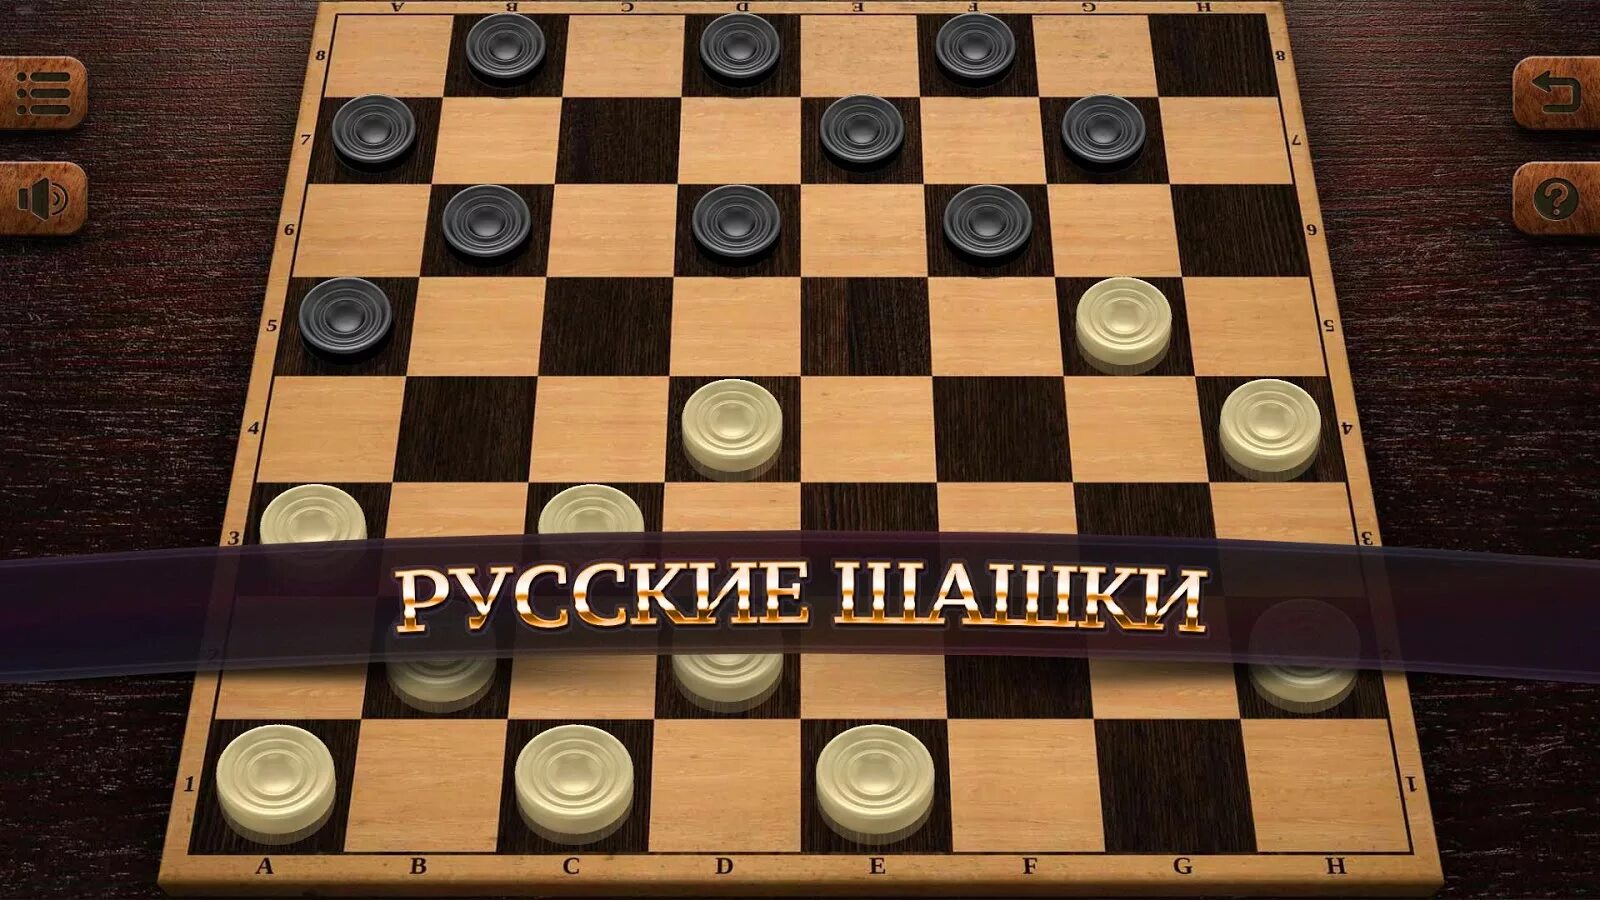 Checkers game. Русские шашки 8.1.50. Чекерс шашки. Русские шашки 3.11.